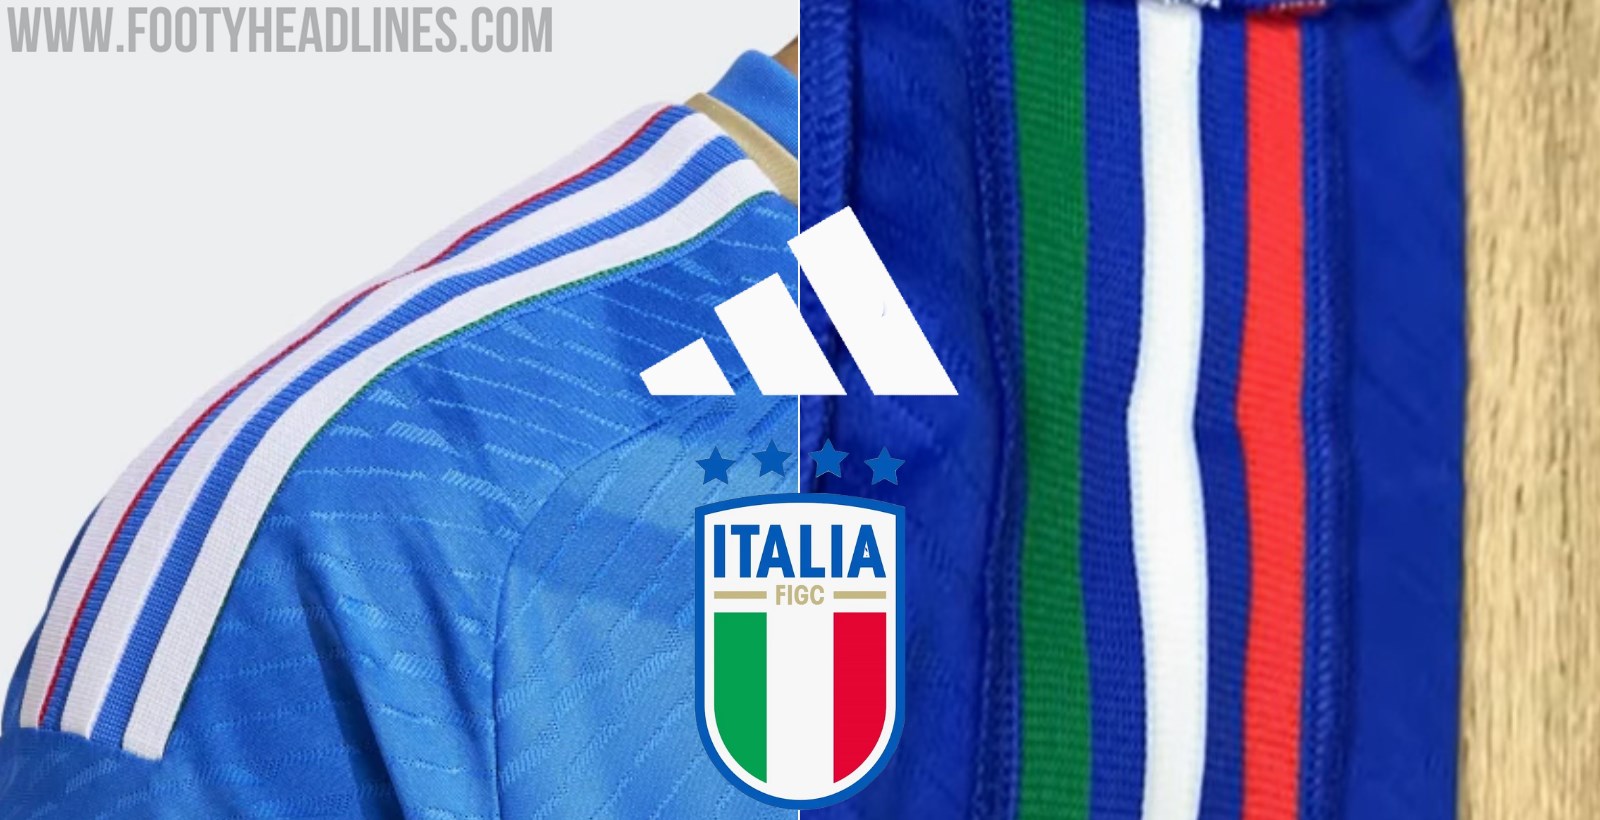 adidas Presents The New Italy Football Jerseys